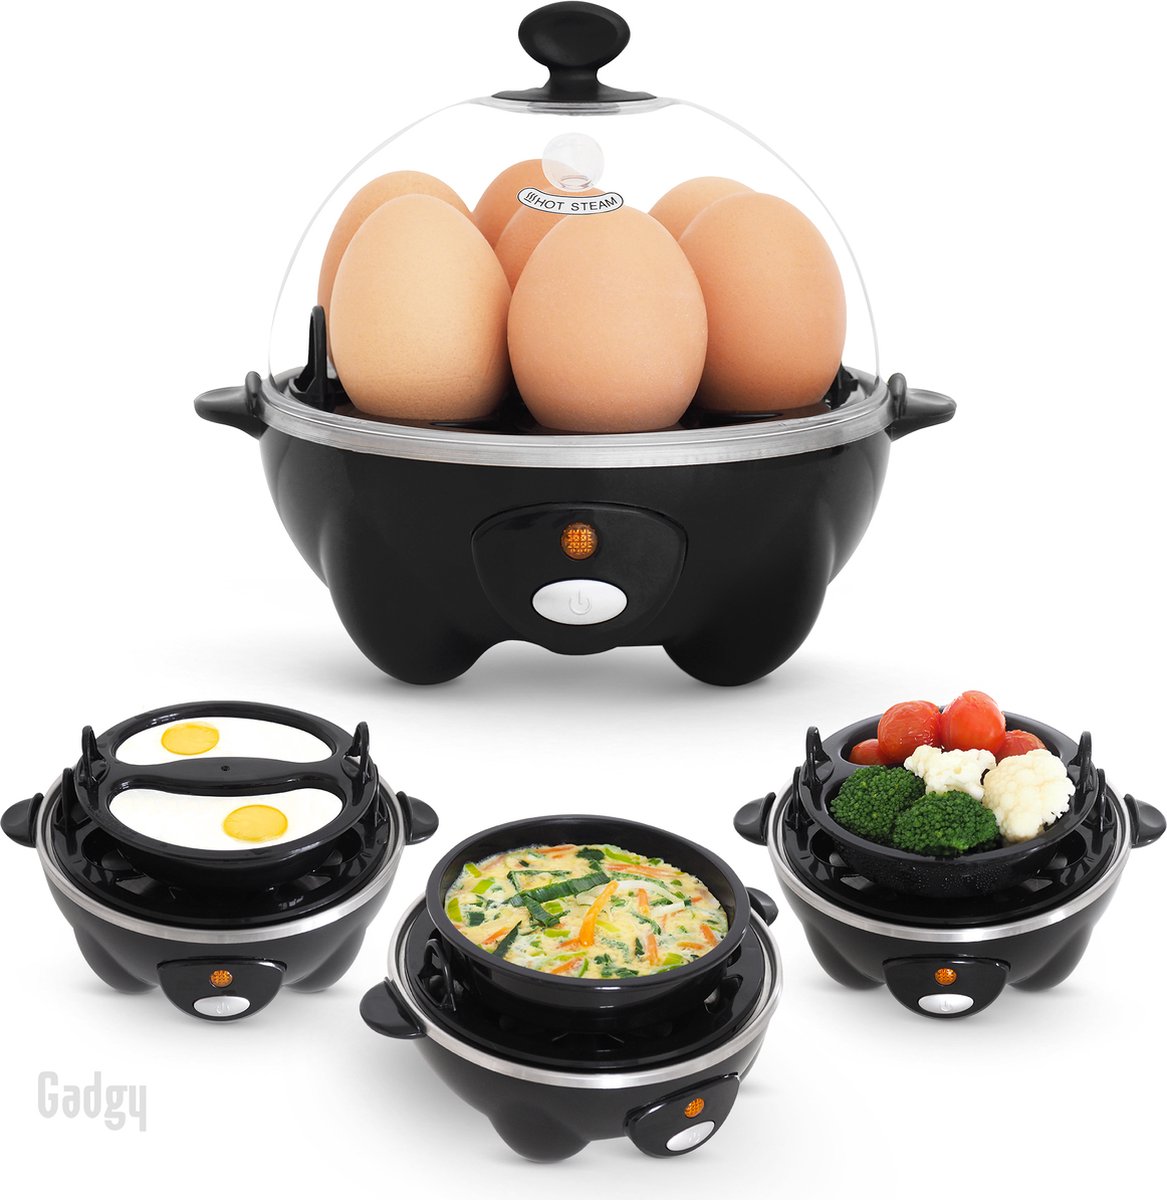 Gadgy Eierkoker Elektrisch 7 Eieren – Koken Pocheren Roerei Omelet – Vaatwasbestendig Eierkoker